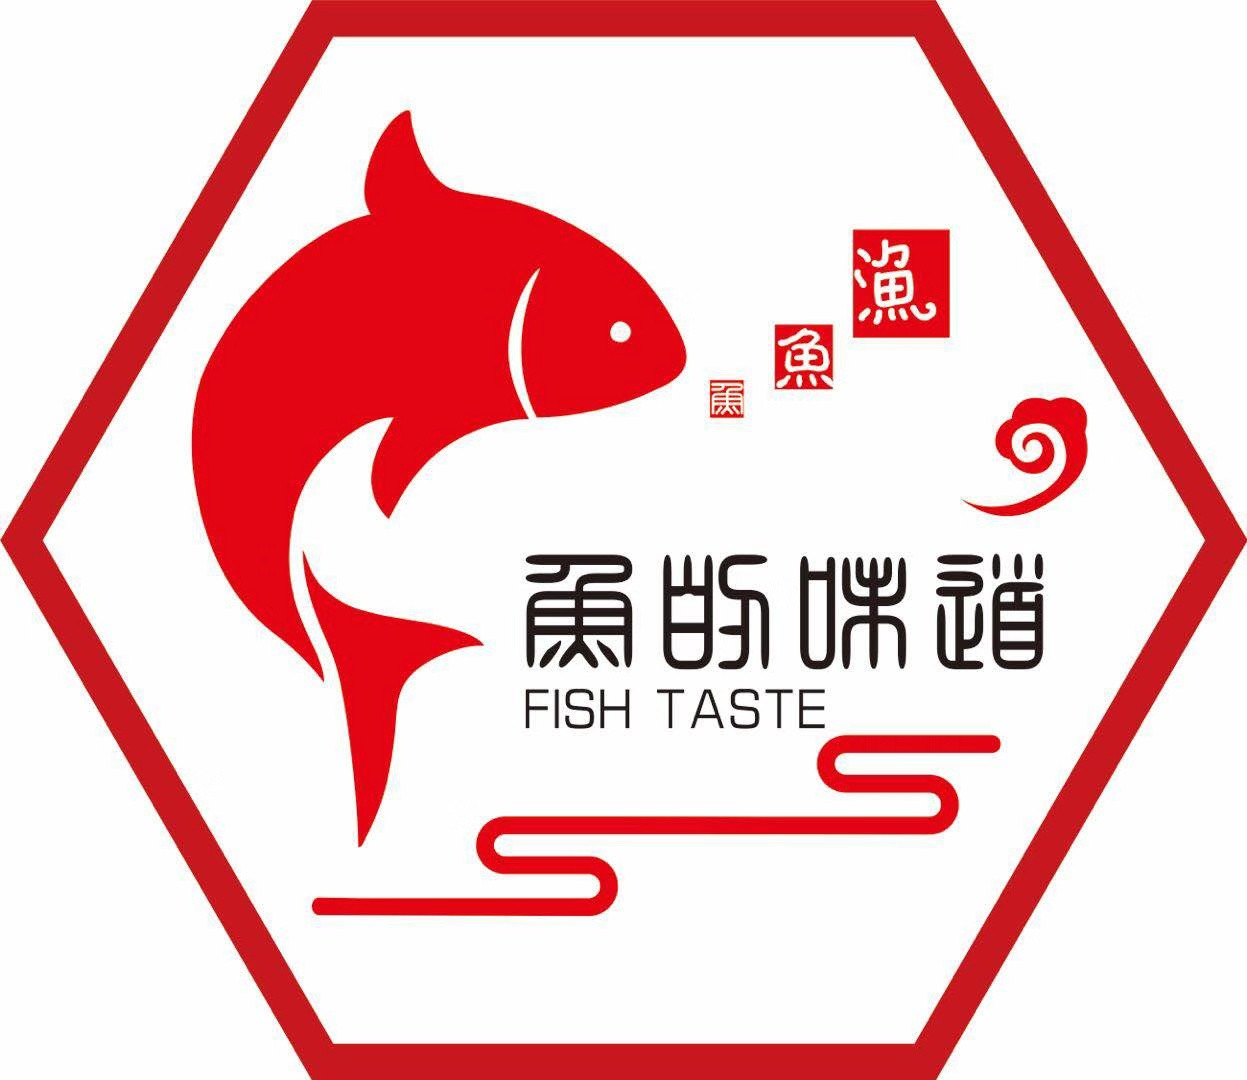 鱼味卷 - 强势单品 - 山东百思特食品有限公司